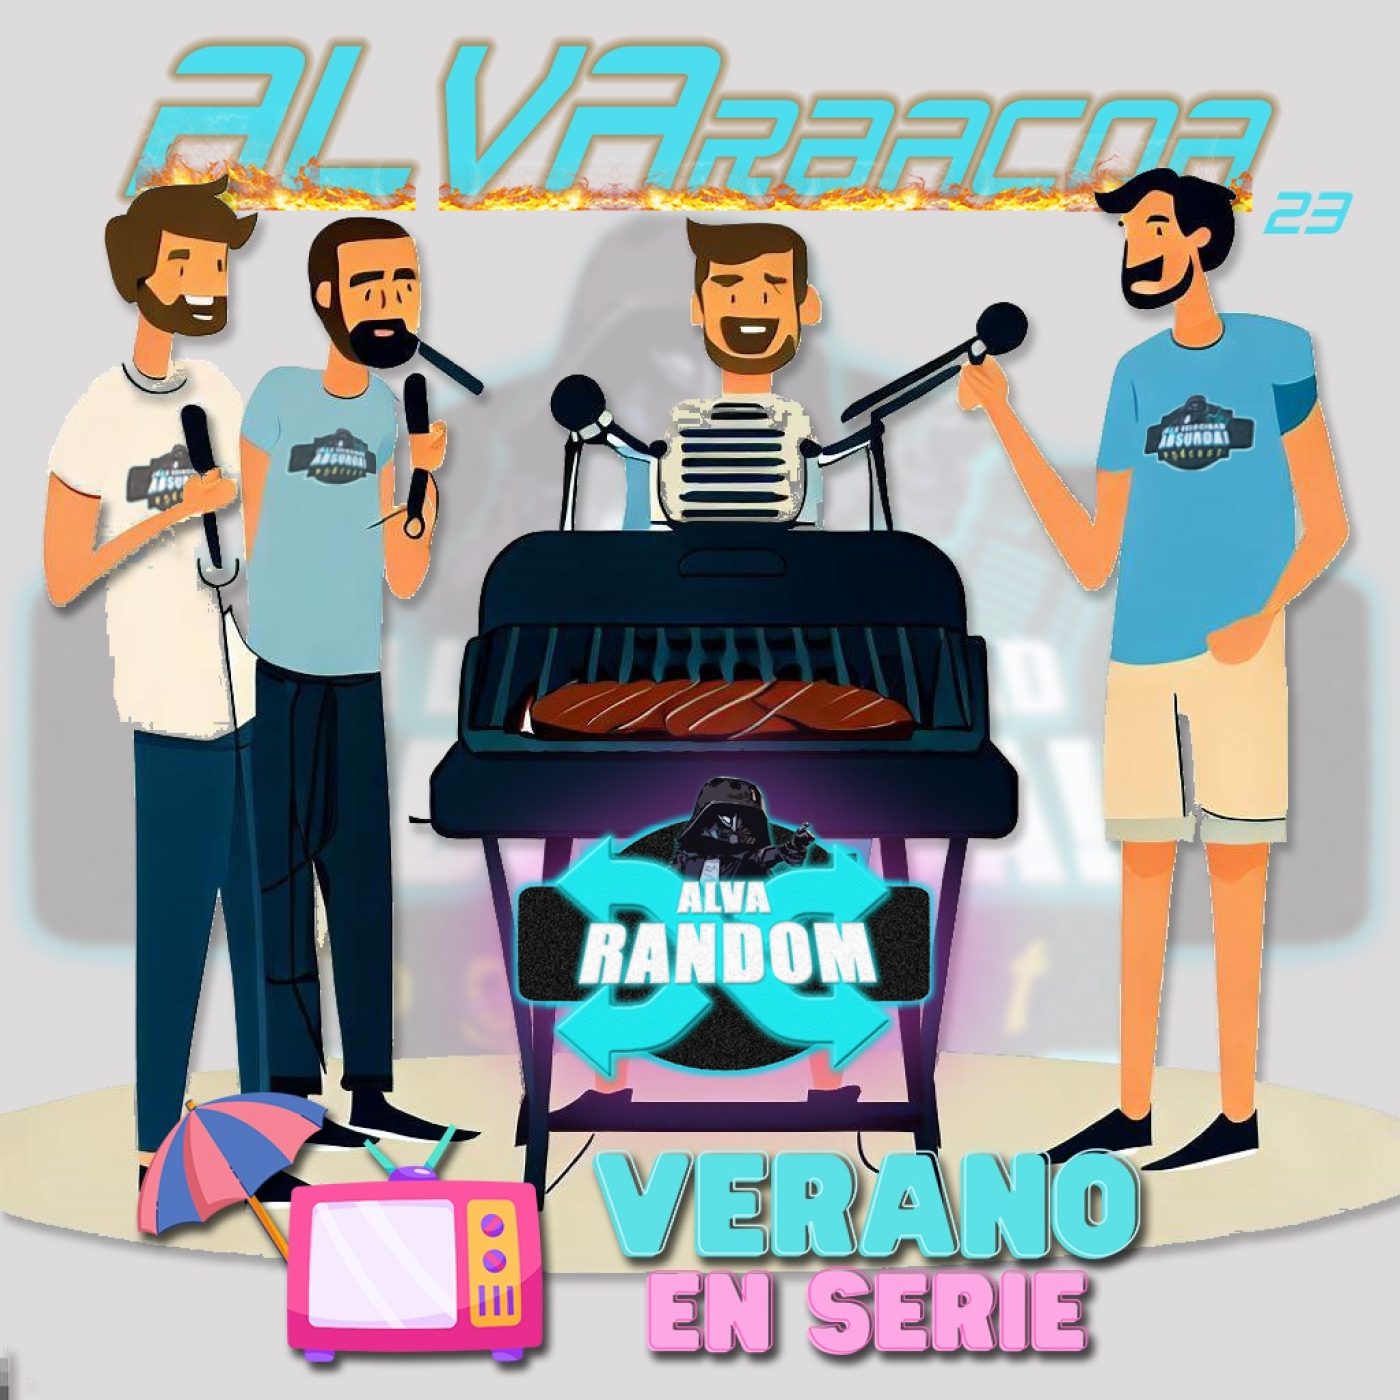 ESPECIAL #ALVArbacoa 2023 – Un verano de serie